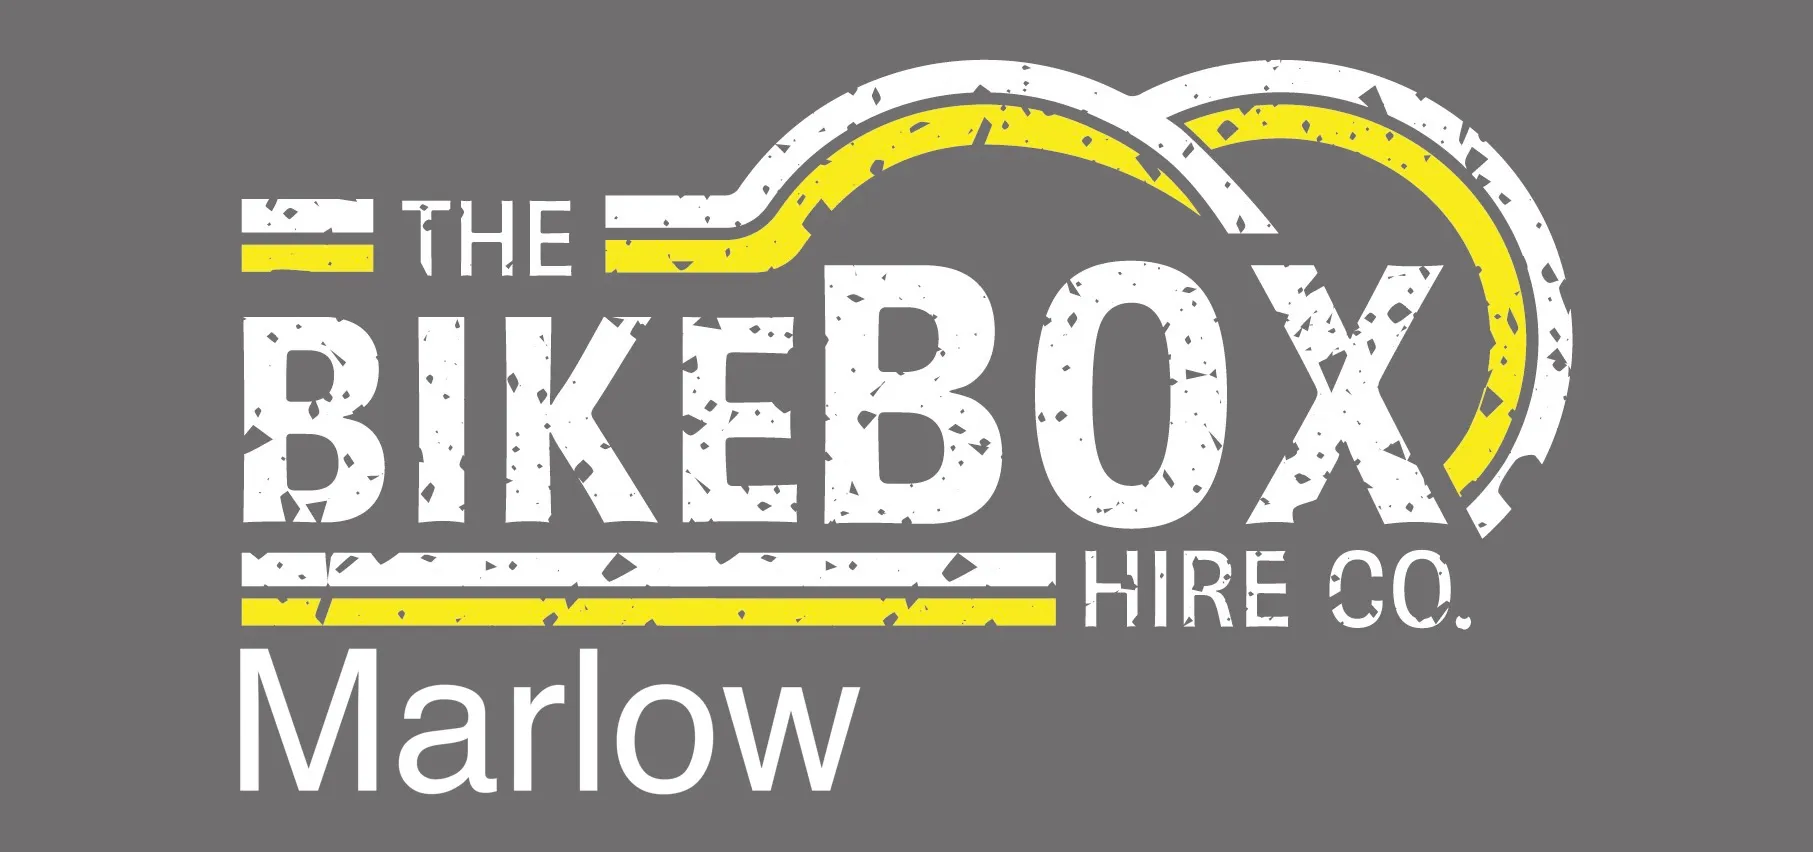 The Bike Box Hire Co